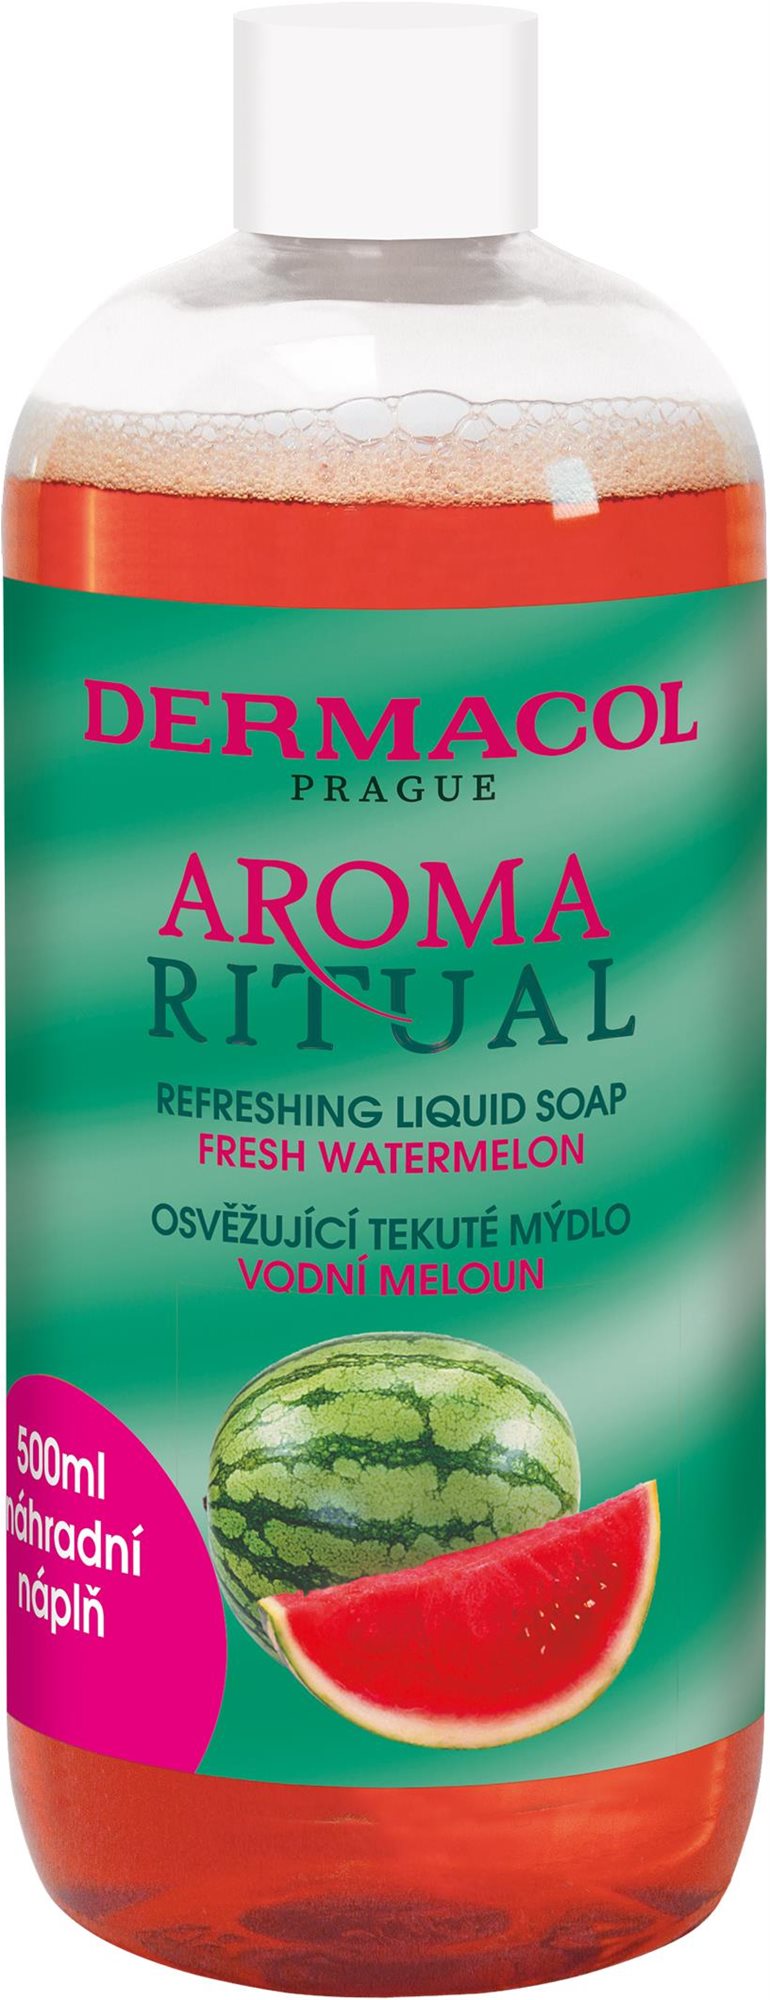 DERMACOL Aroma Ritual refill liquid soap - Watermelon 500 ml